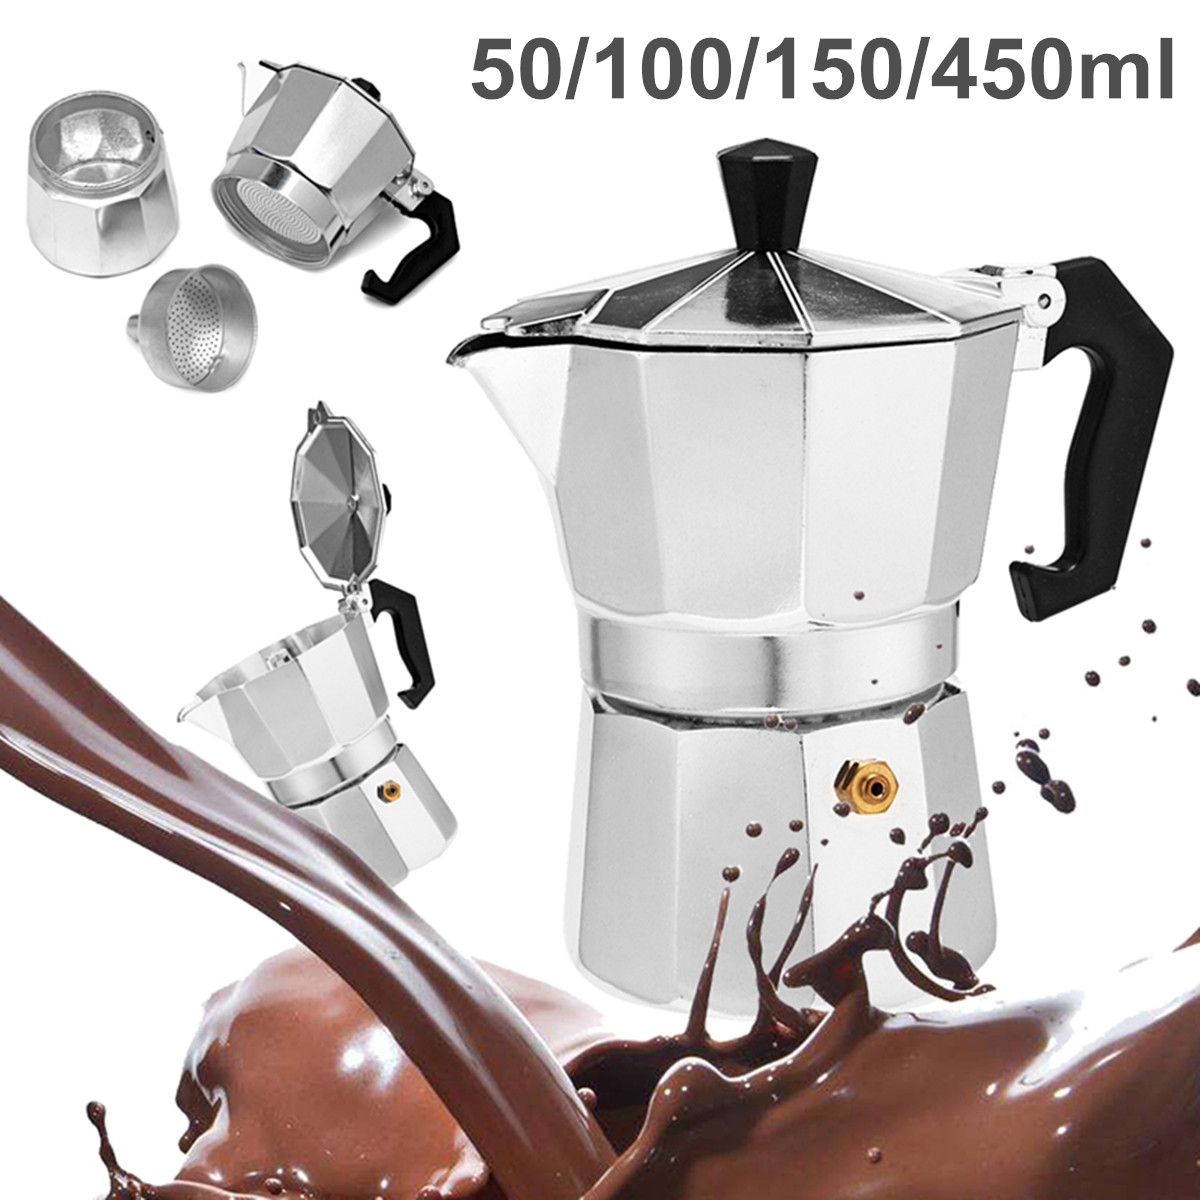 50--100--150--450ml-Silver-Aluminum-Octagonal-Mocha-Coffee-Pot-Cup-Percolator-Maker-Tea-Pot-1333233